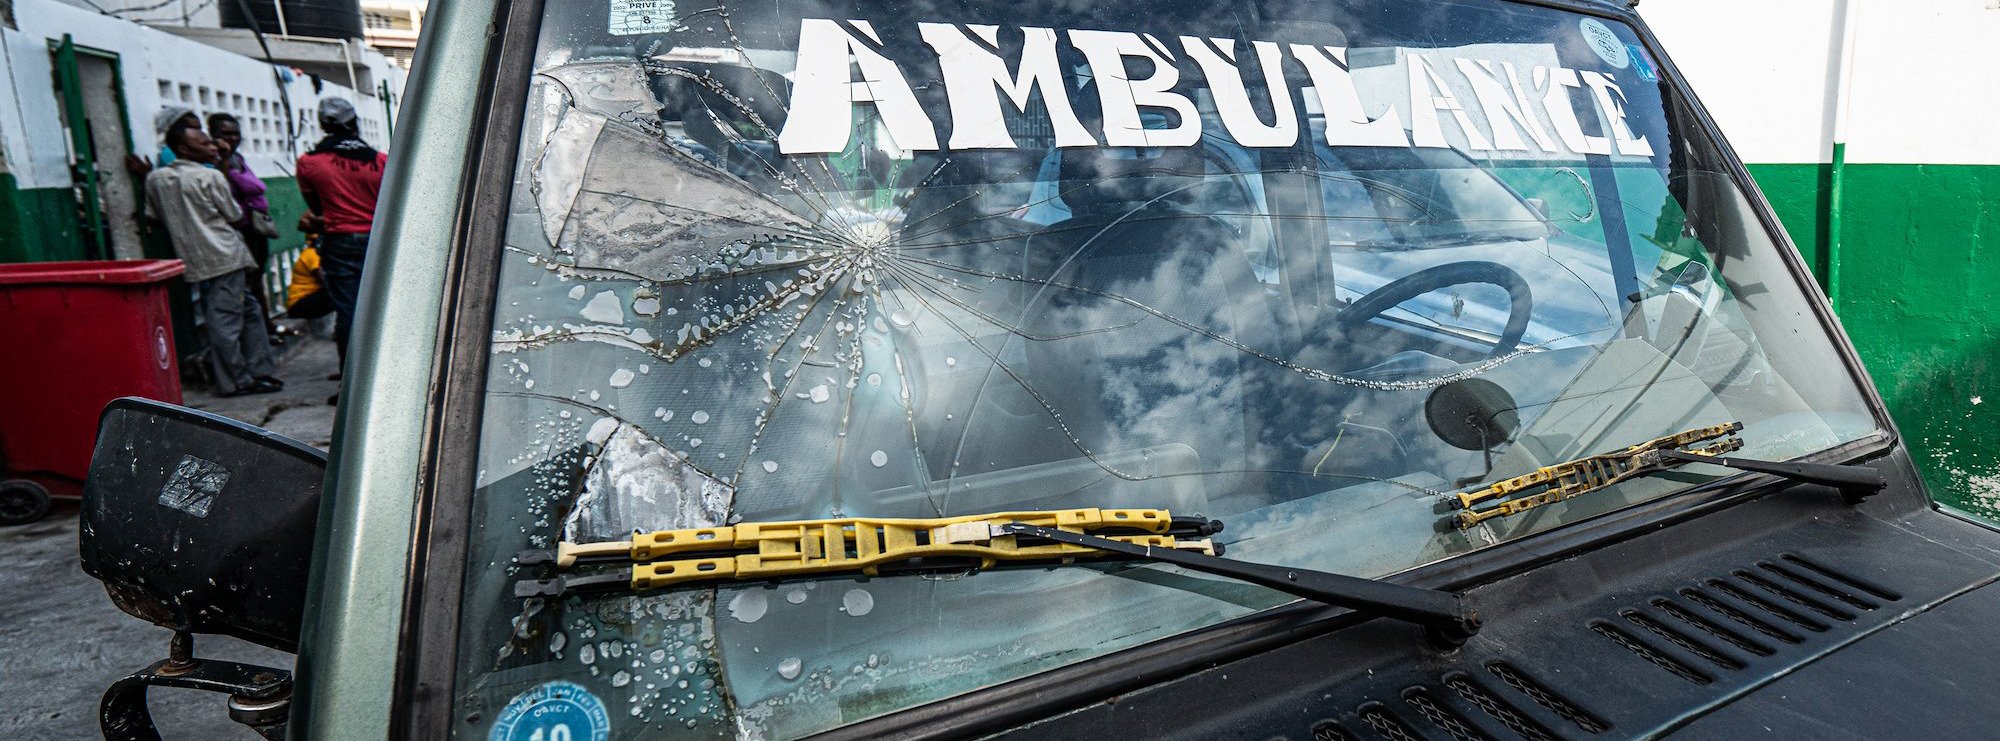 太子港总医院一辆救护车的挡风玻璃破裂